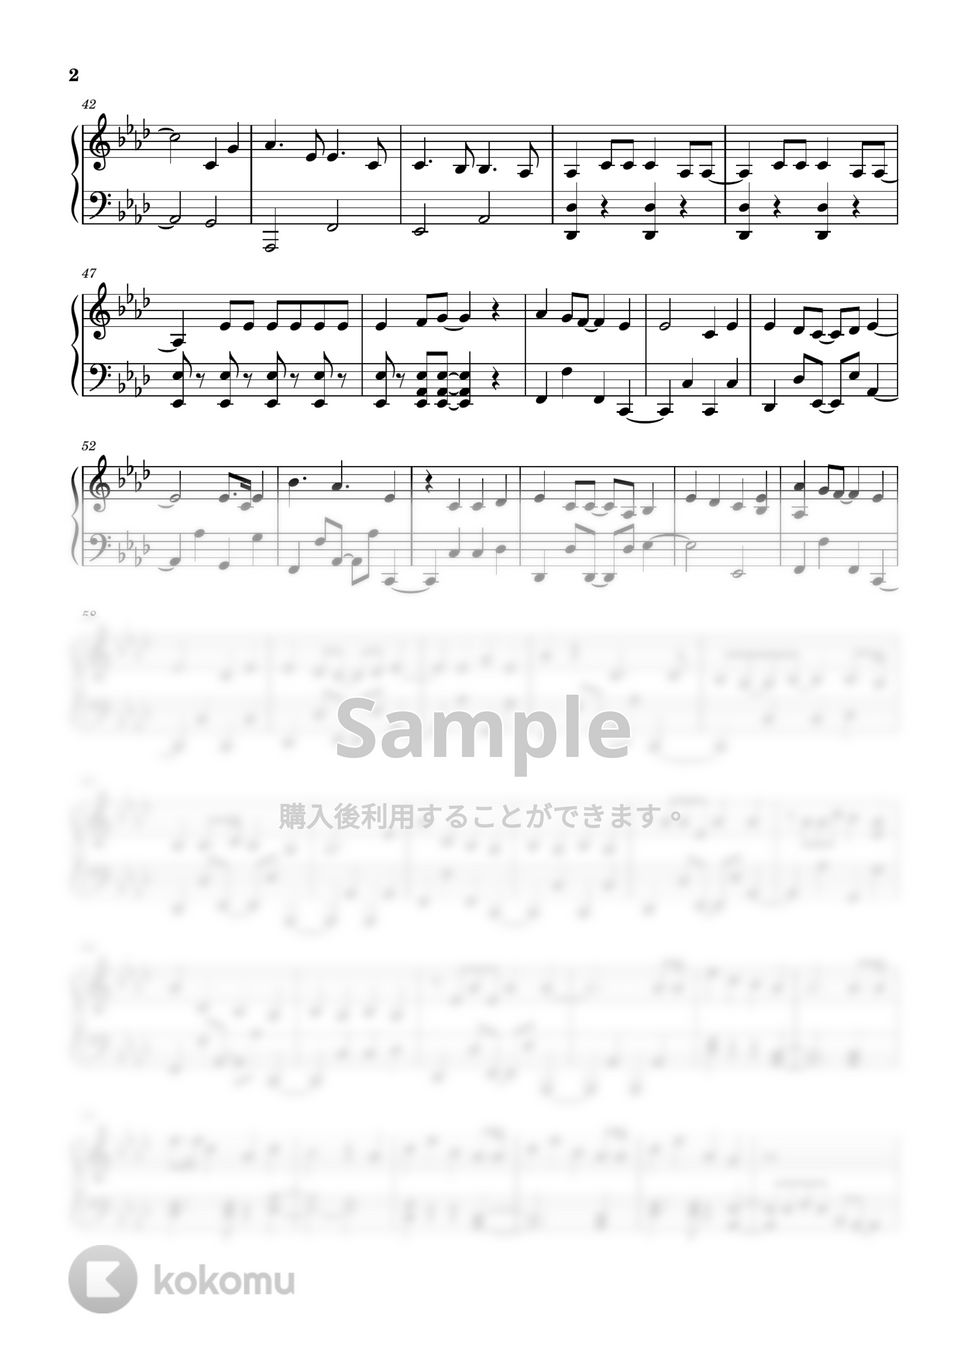 すとぷり - シルベボシ (ピアノソロ譜) by 萌や氏